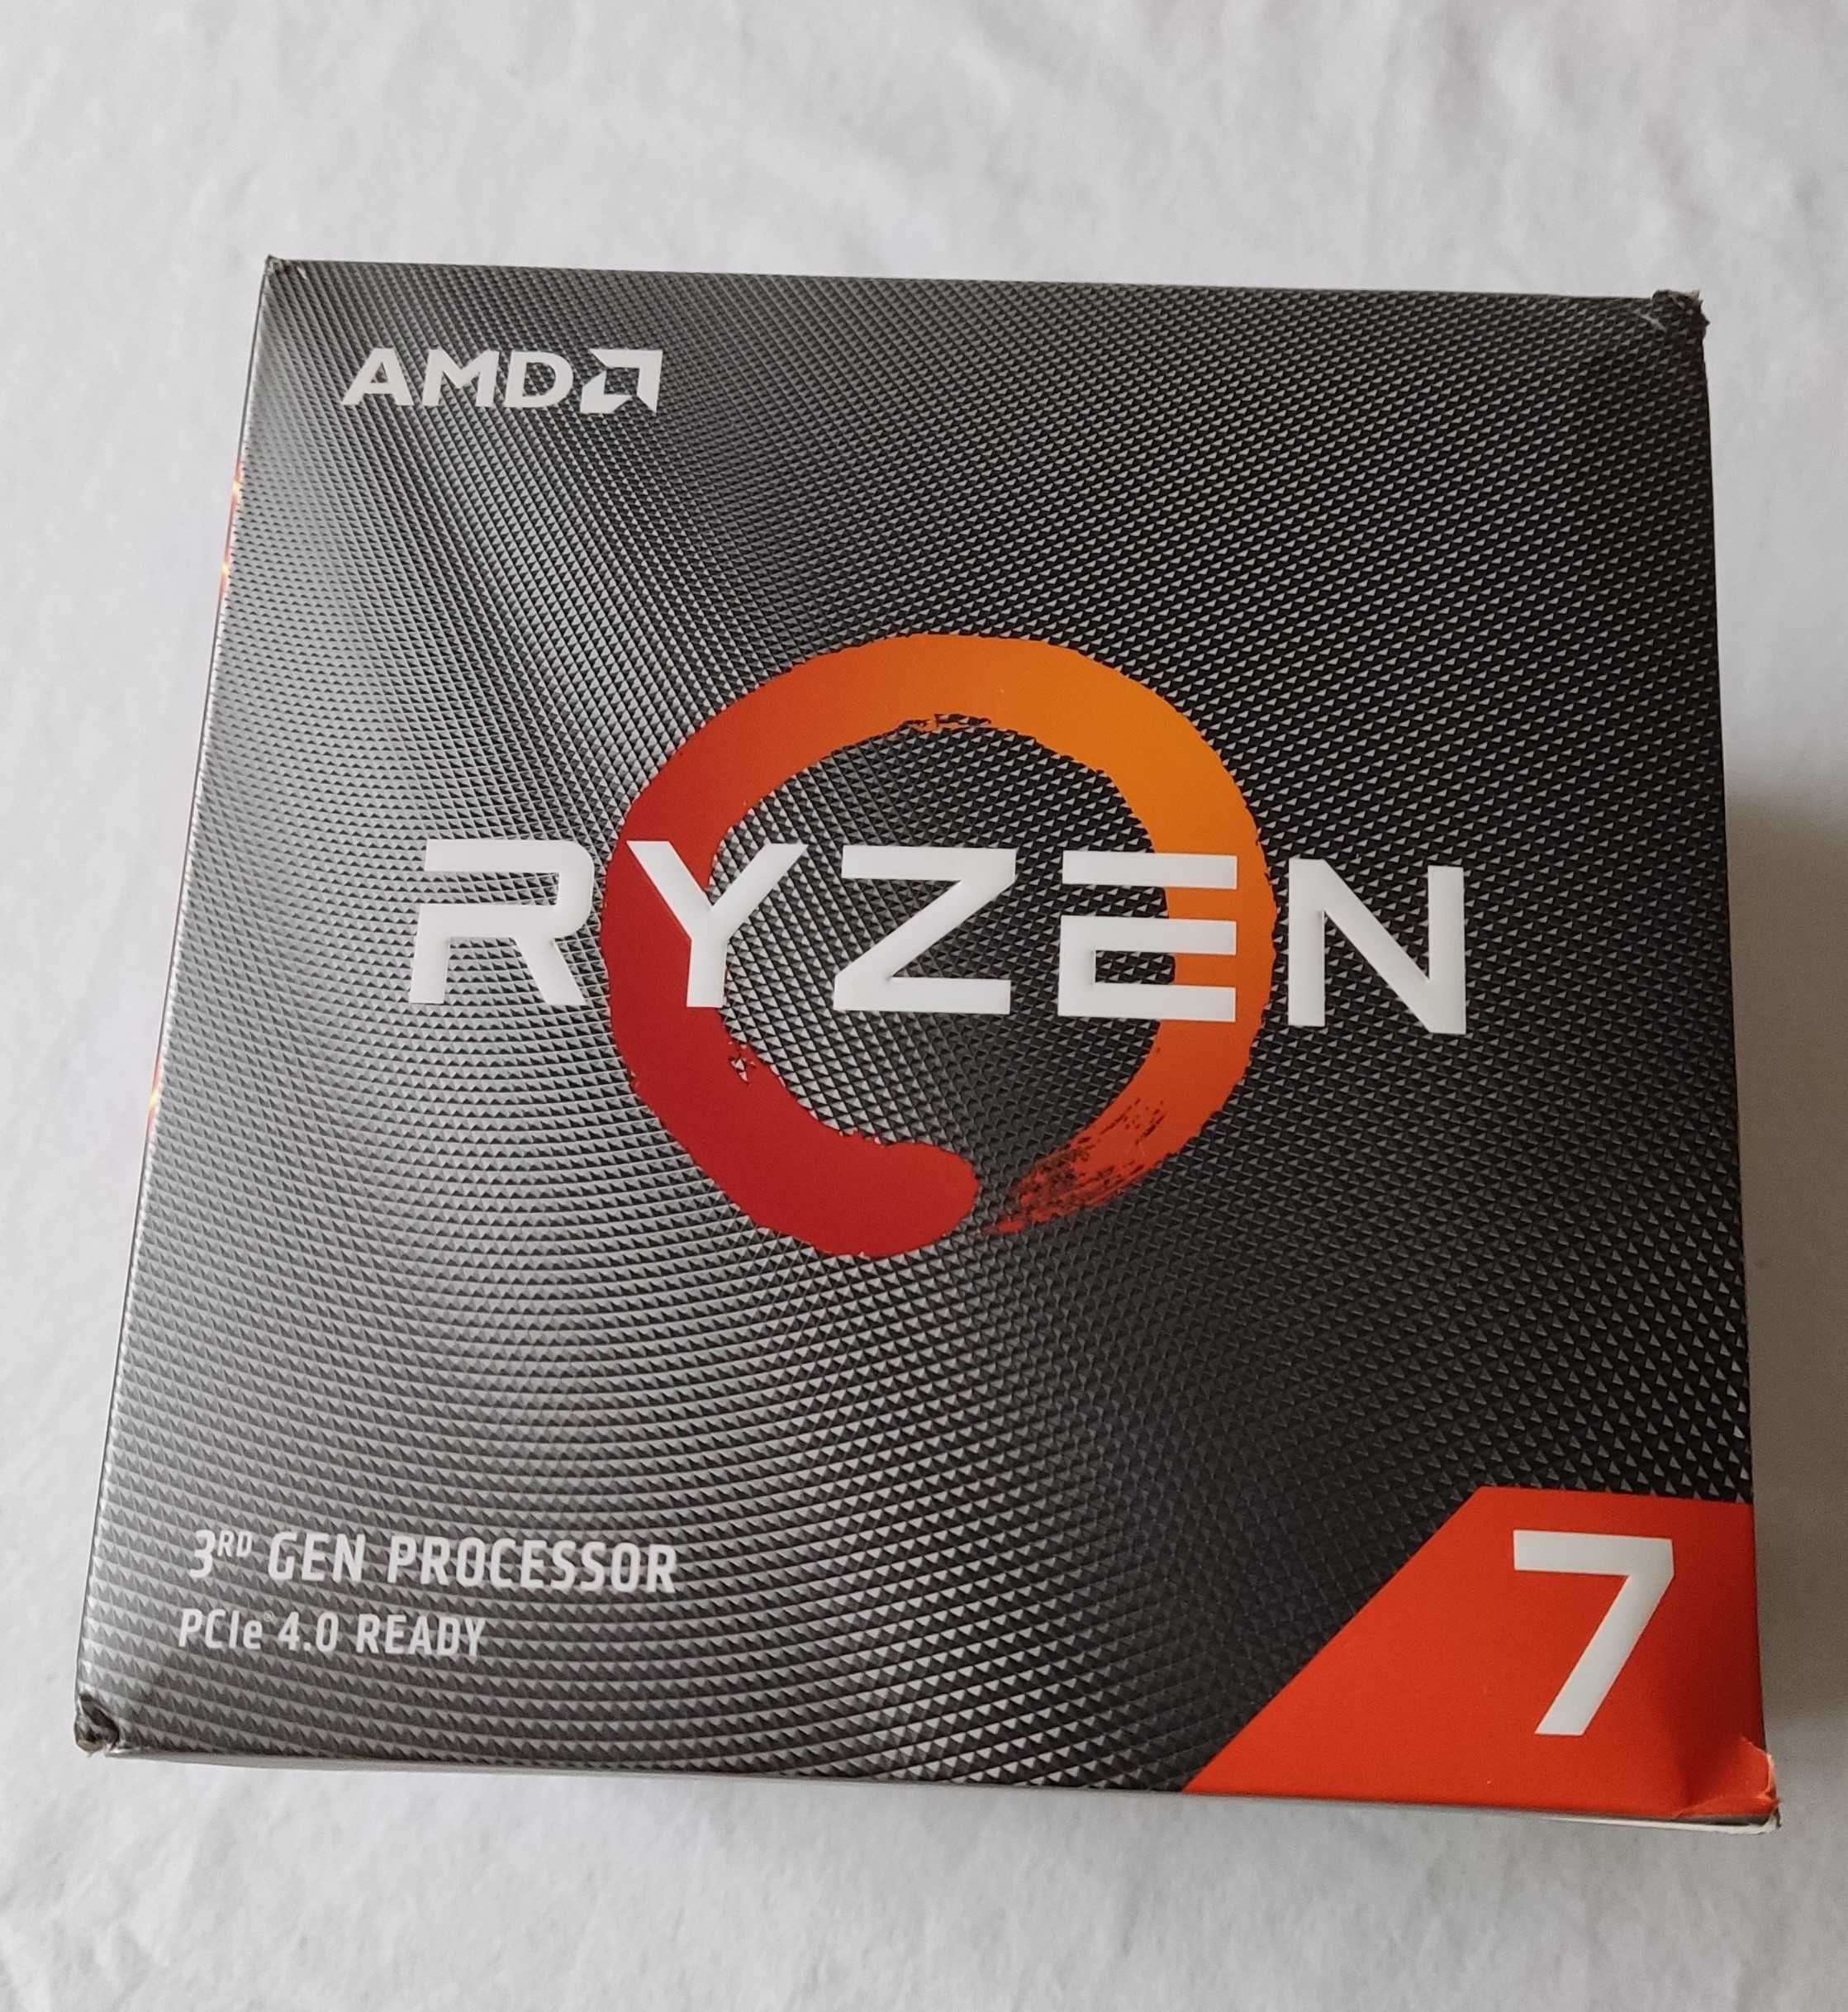 Procesor AMD Ryzen 7 3800X + Chłodzenie Stockowe RGB